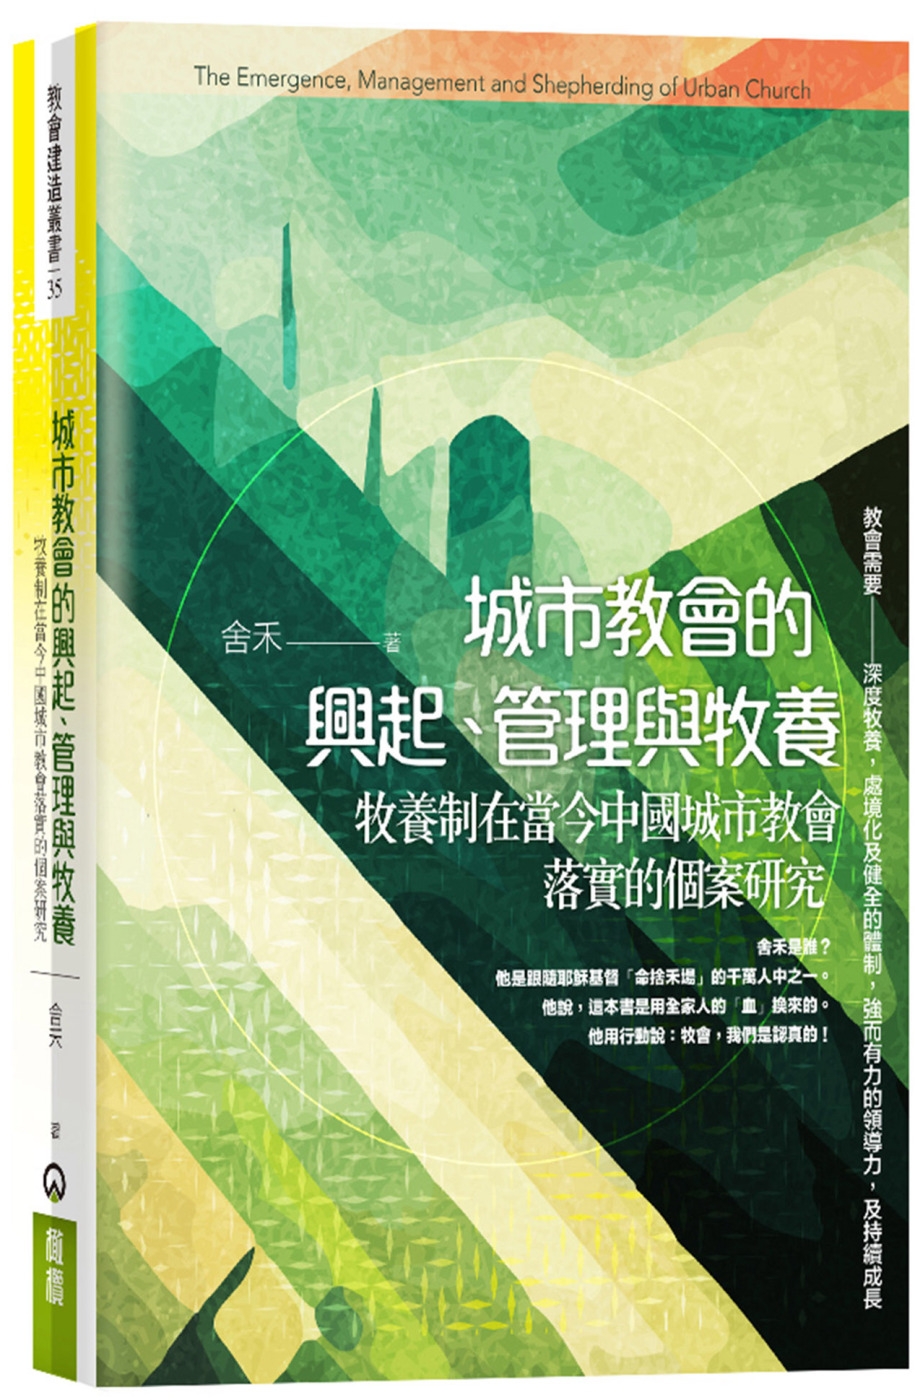 城市教會的興起、管理與牧養：牧養制在當今中國城市教會落實的個...